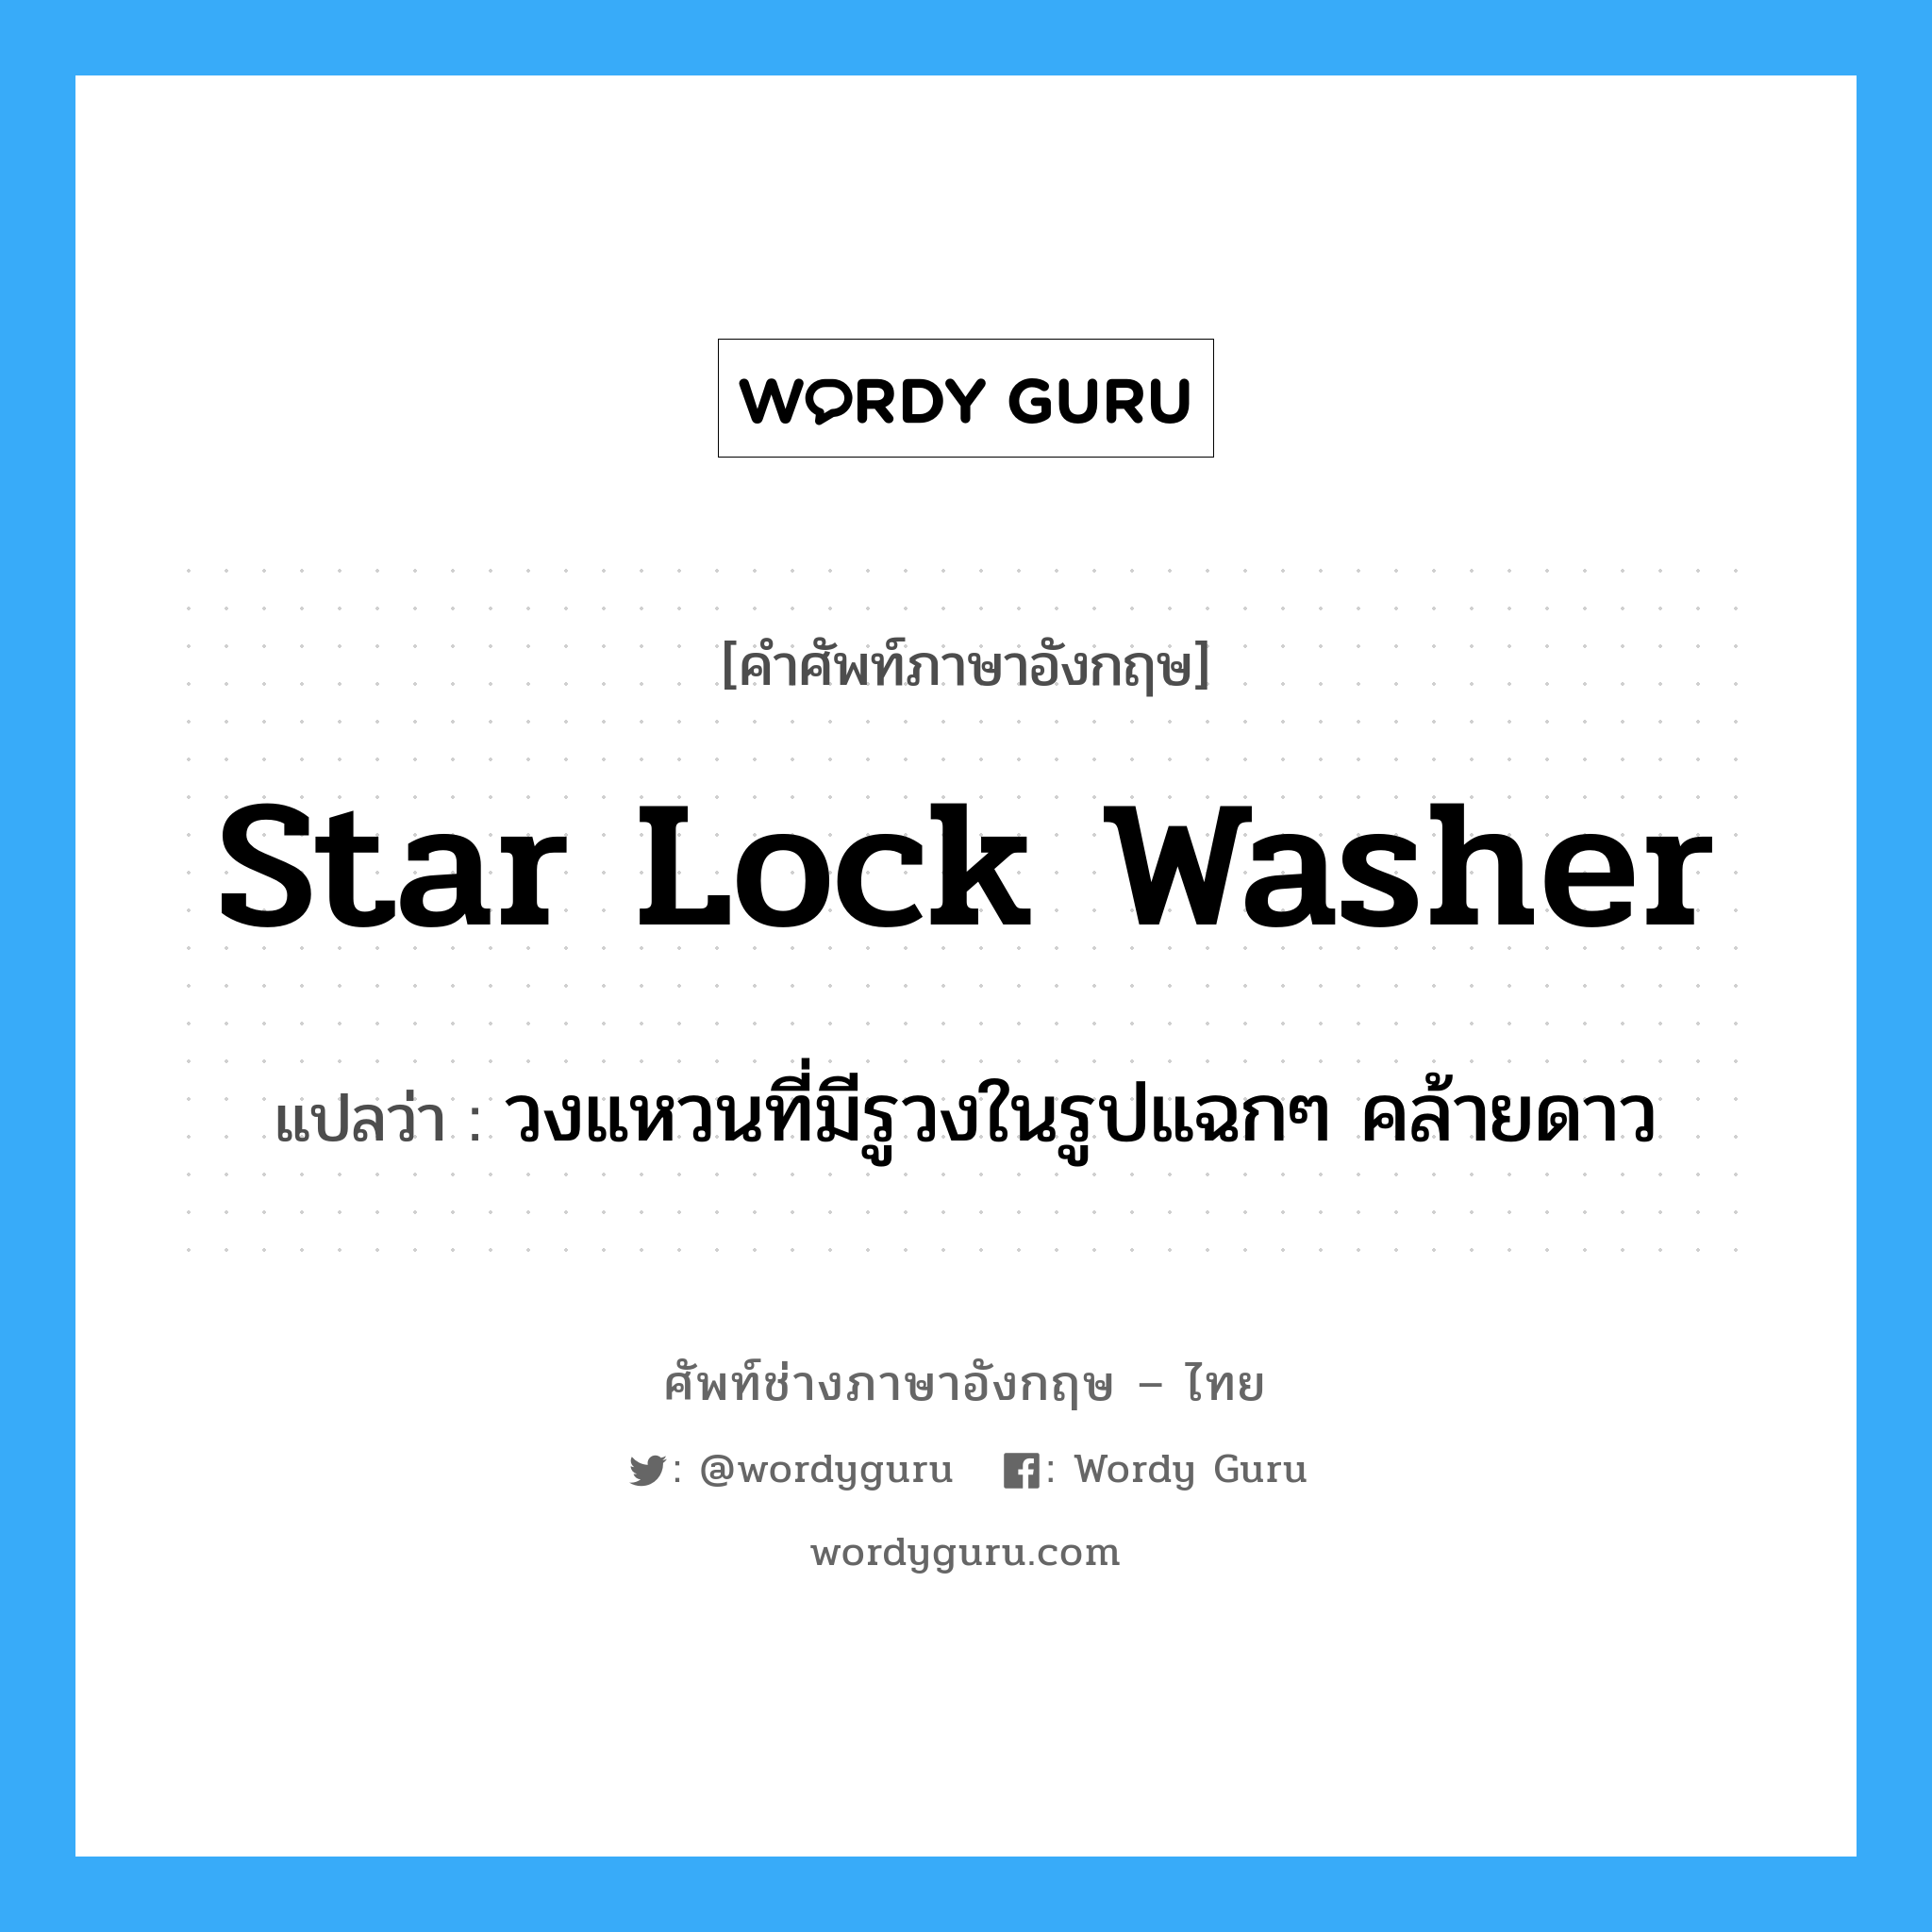 star lock washer แปลว่า?, คำศัพท์ช่างภาษาอังกฤษ - ไทย star lock washer คำศัพท์ภาษาอังกฤษ star lock washer แปลว่า วงแหวนที่มีรูวงในรูปแฉกๆ คล้ายดาว